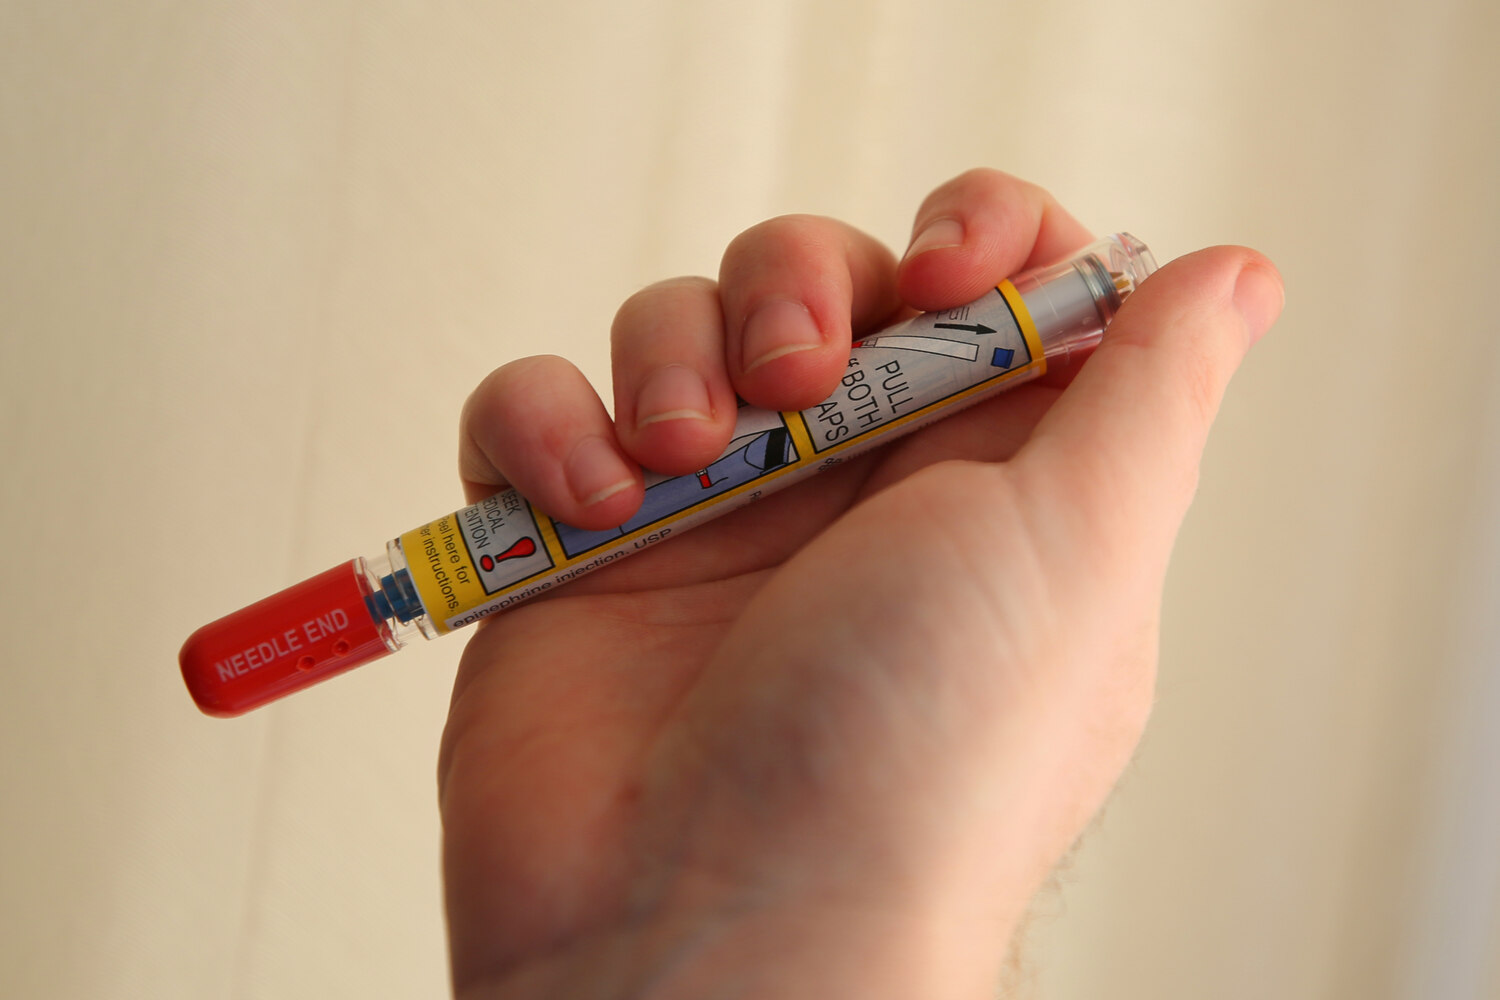 Epi pen for allergic reaction